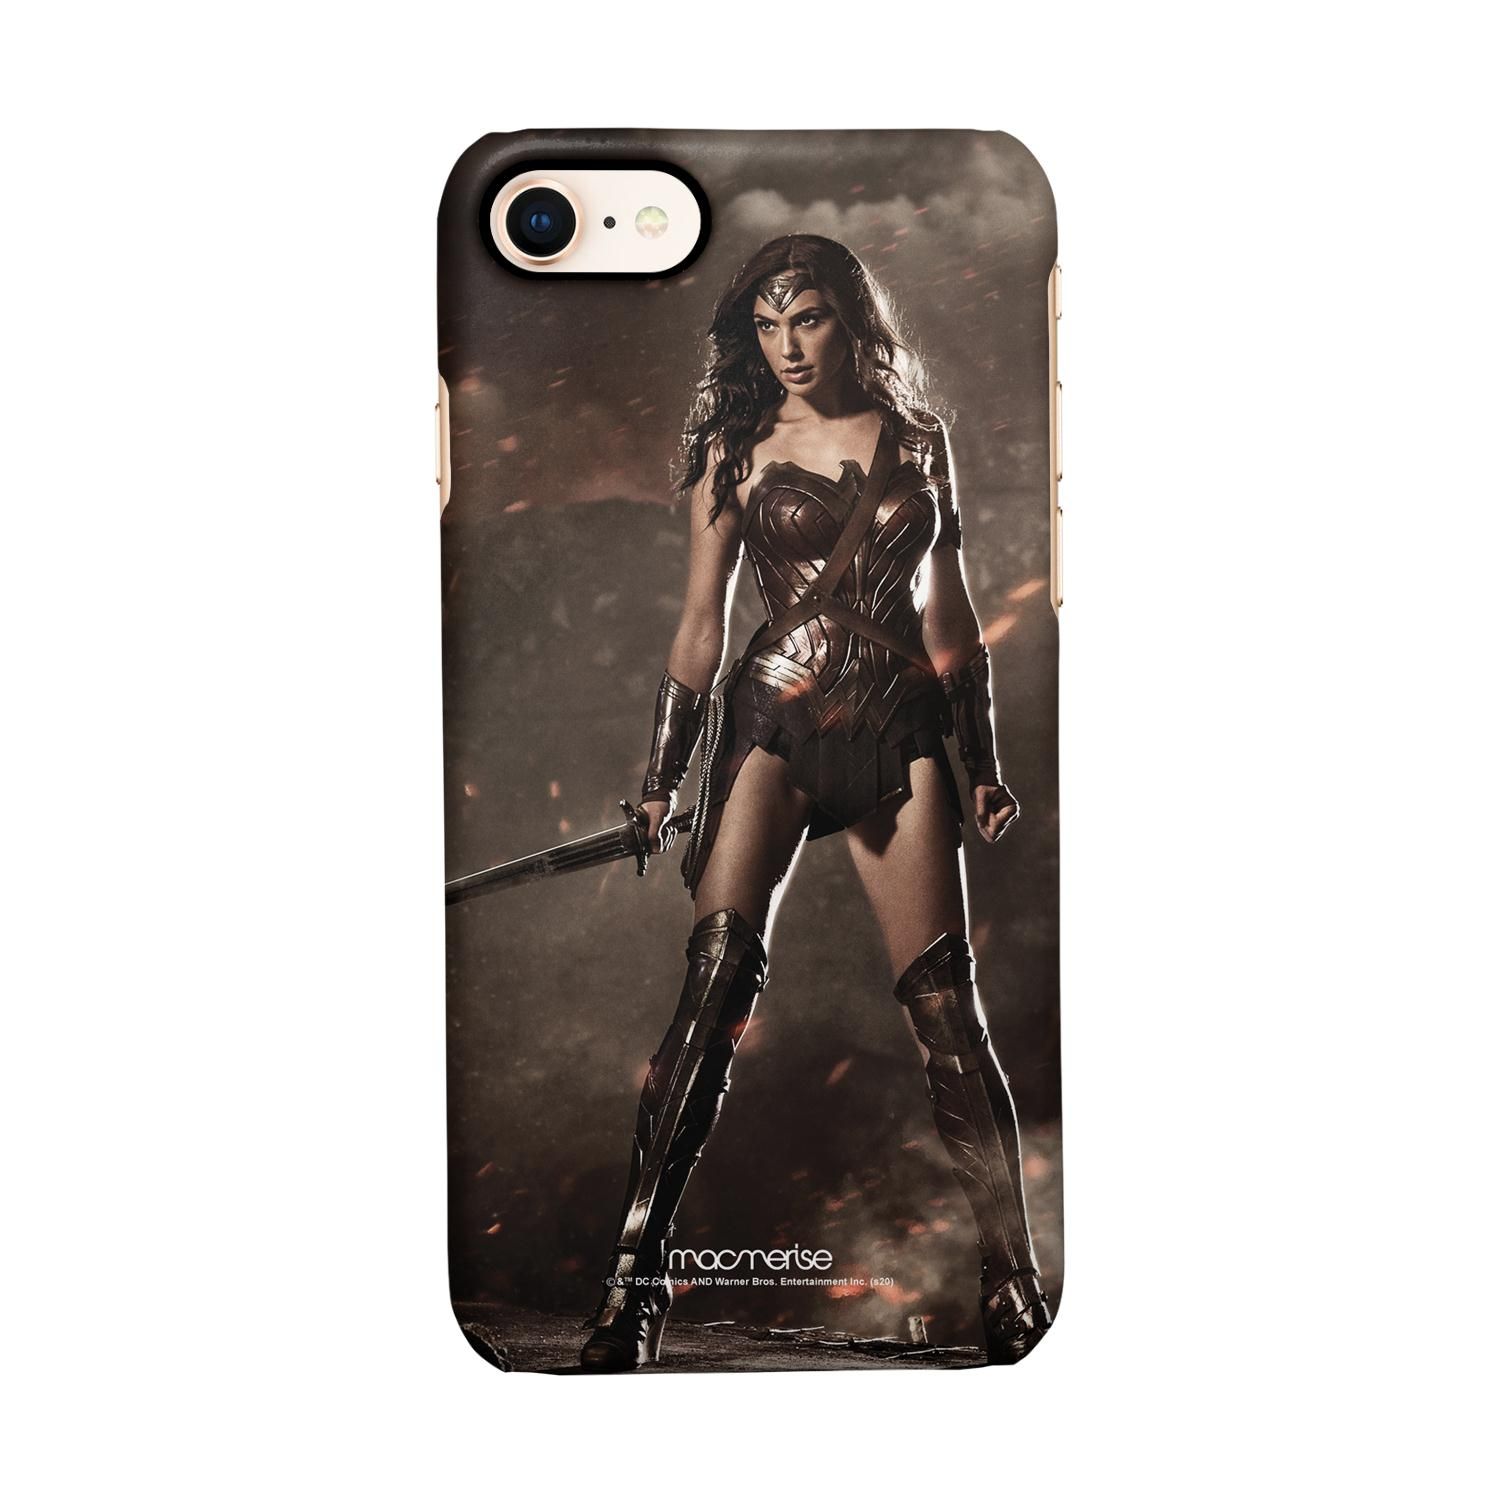 Buy Lethal Wonderwoman - Sleek Phone Case for iPhone 7 Online